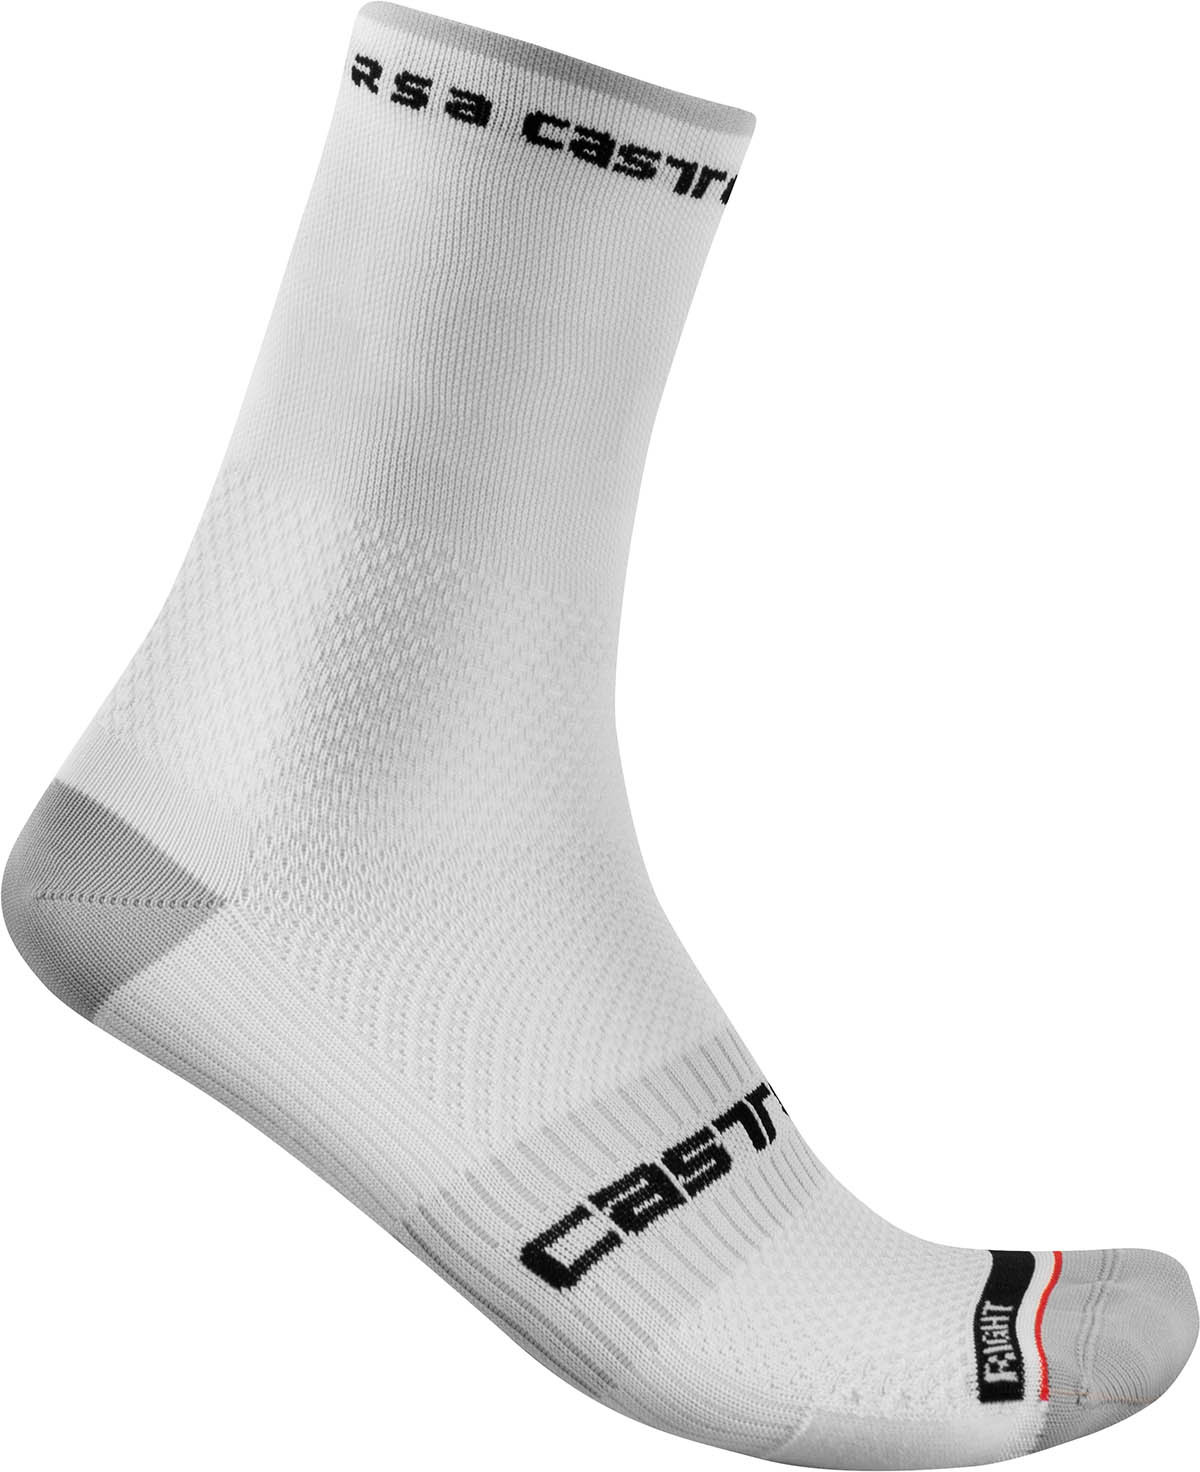 Castelli Rosso Corsa Pro 15 Sock - White